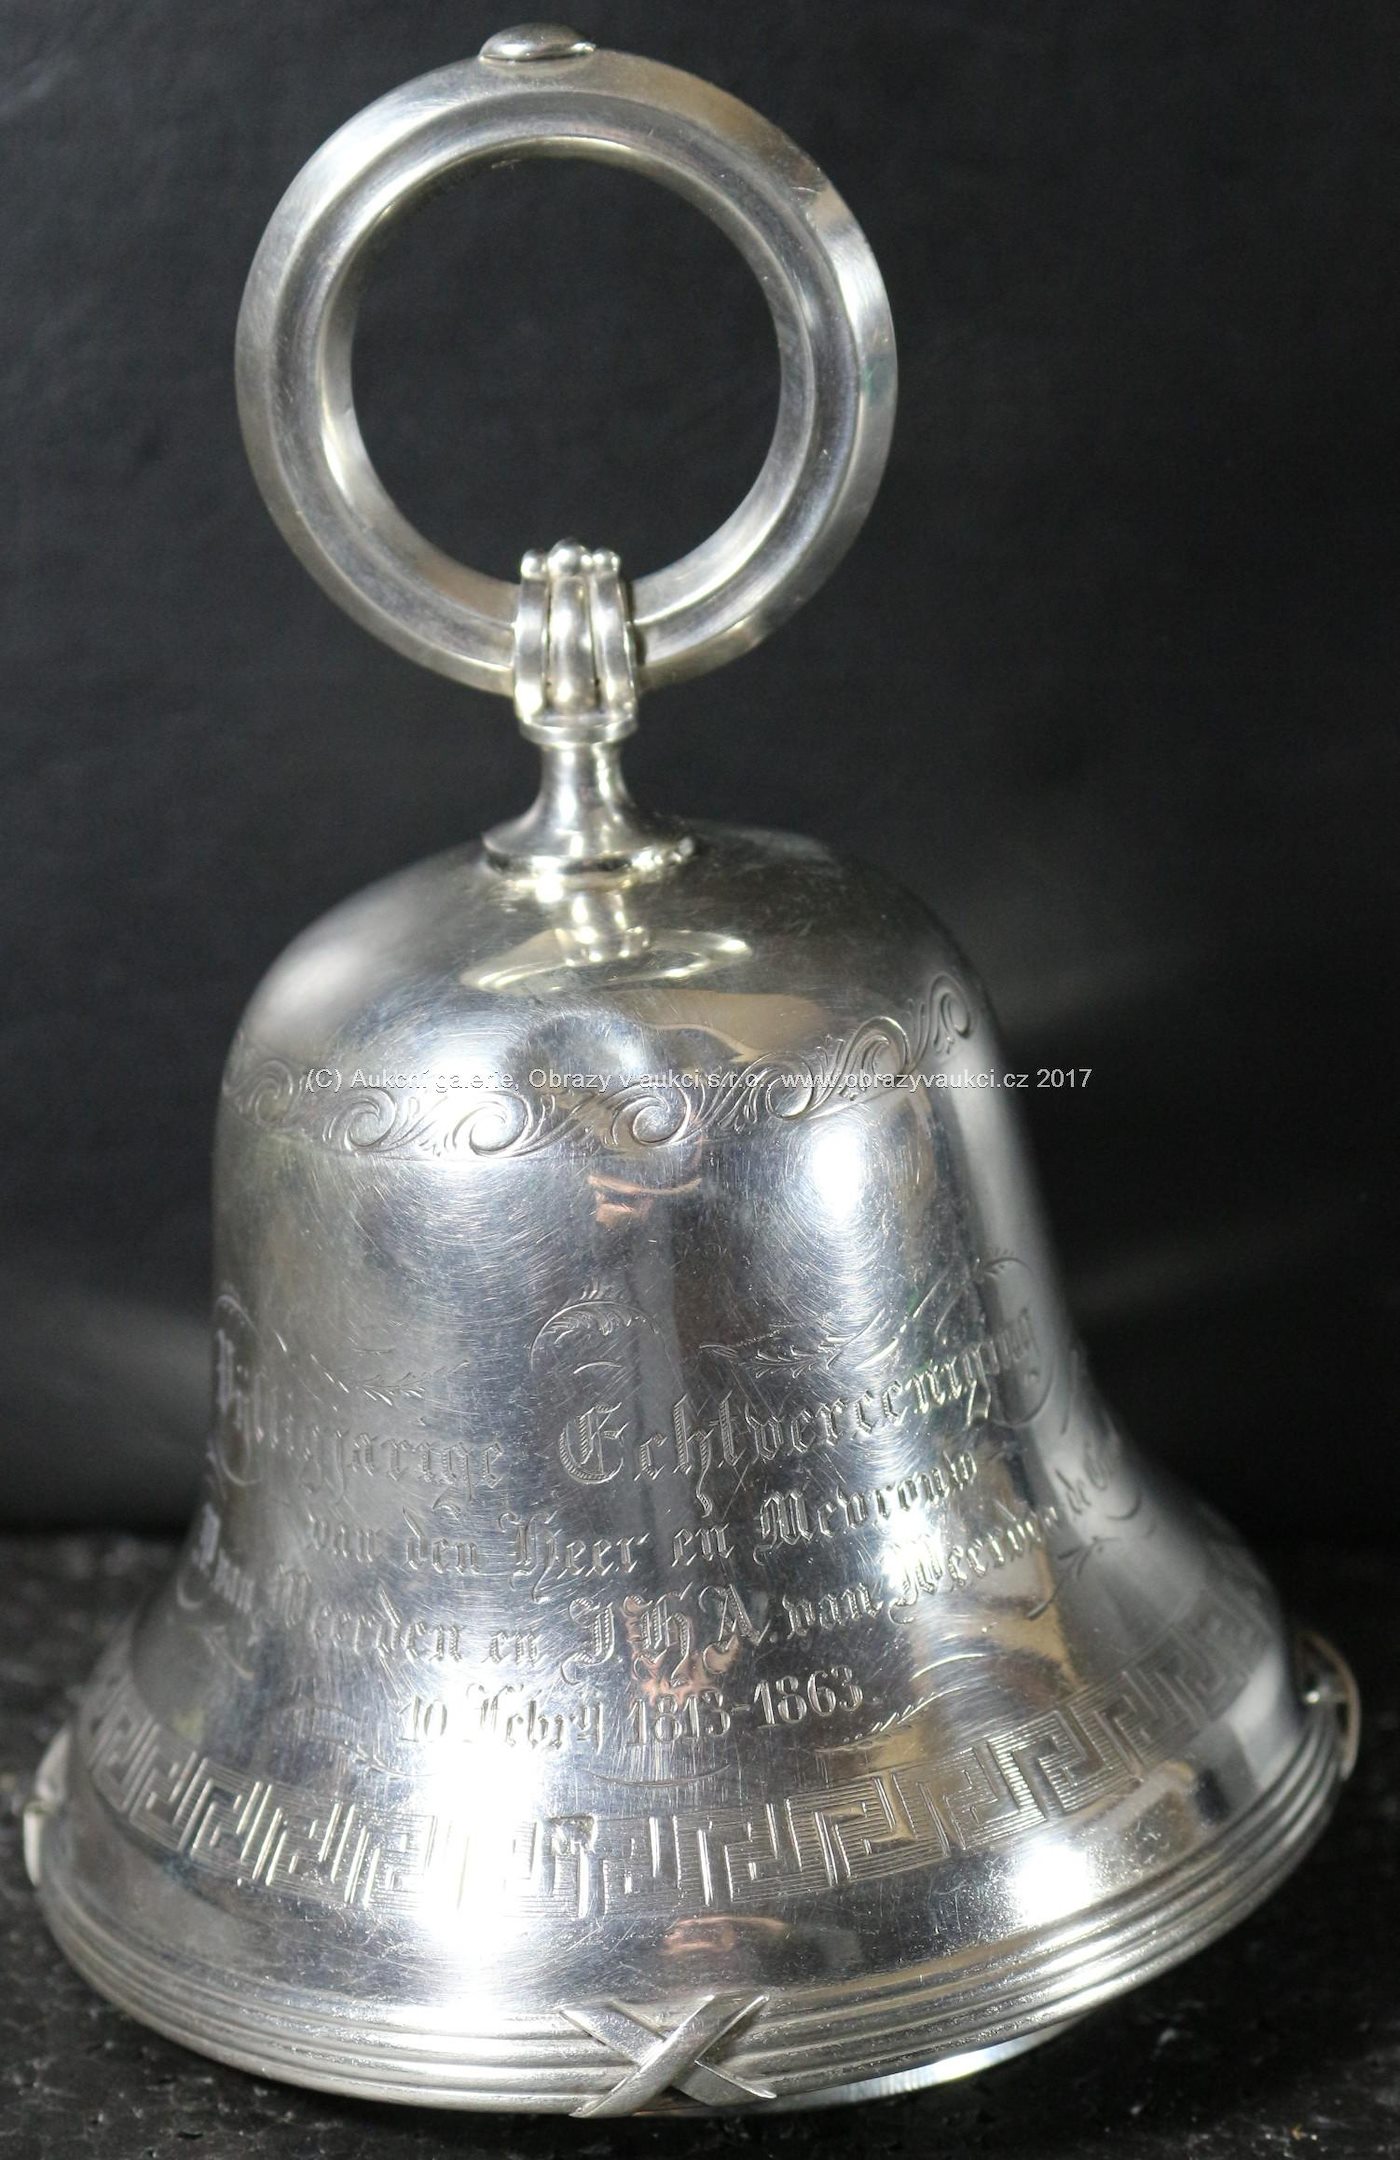 Zvon - Plášť - obecný kov, rukojeť - stříbro 833/1000, atest PÚ, celková hmotnost 242,30 g